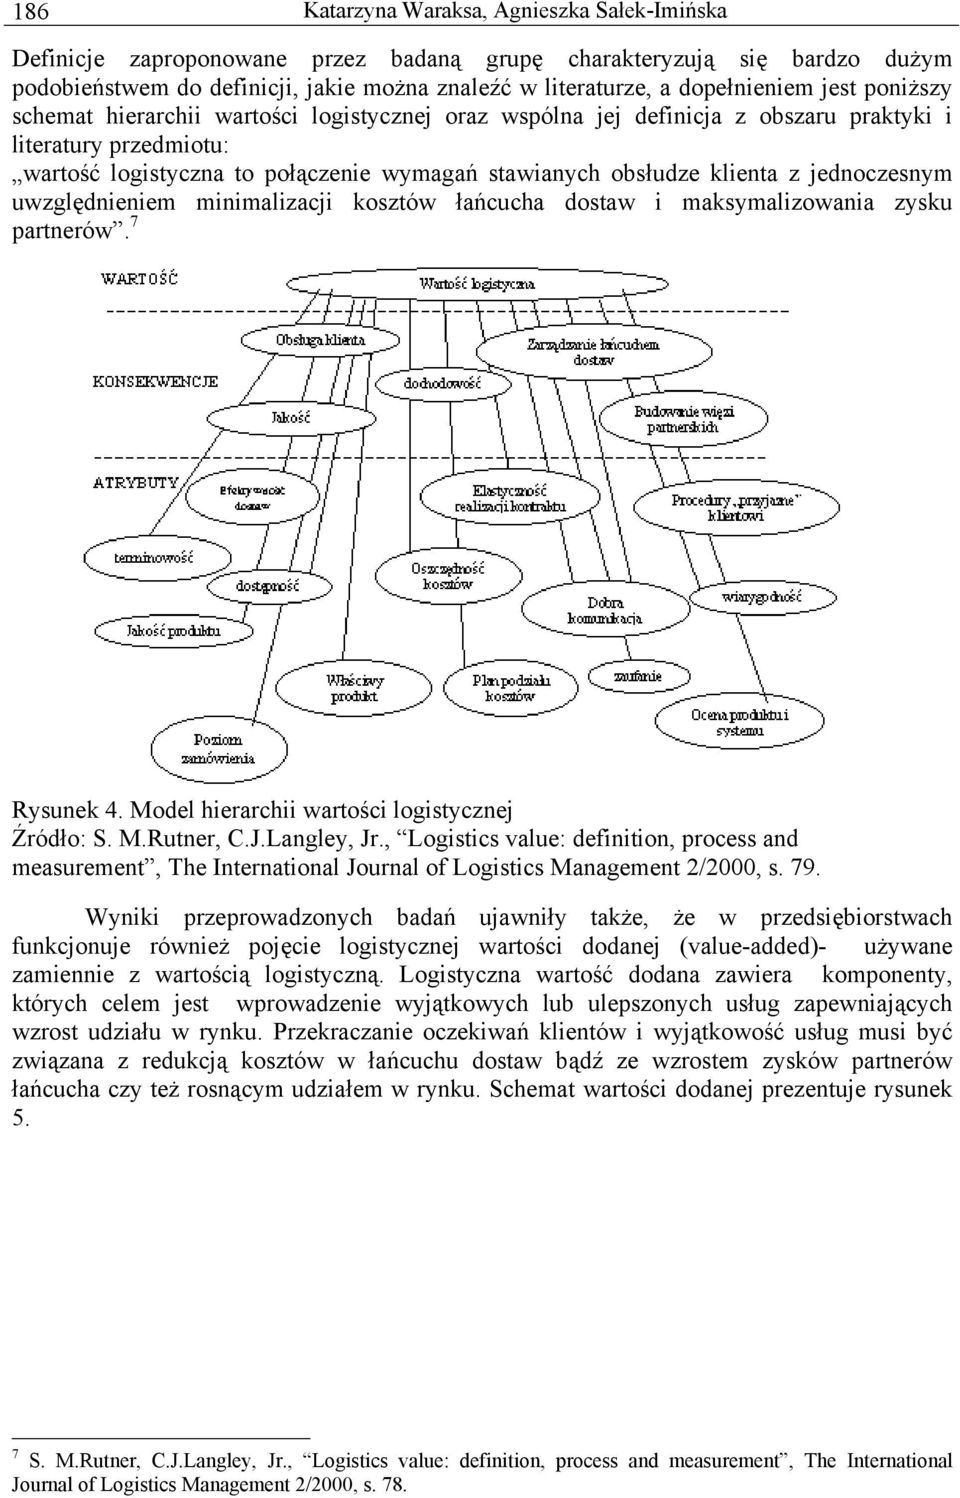 jednoczesnym uwzględnieniem minimalizacji kosztów łańcucha dostaw i maksymalizowania zysku partnerów. 7 Rysunek 4. Model hierarchii wartości logistycznej Źródło: S. M.Rutner, C.J.Langley, Jr.